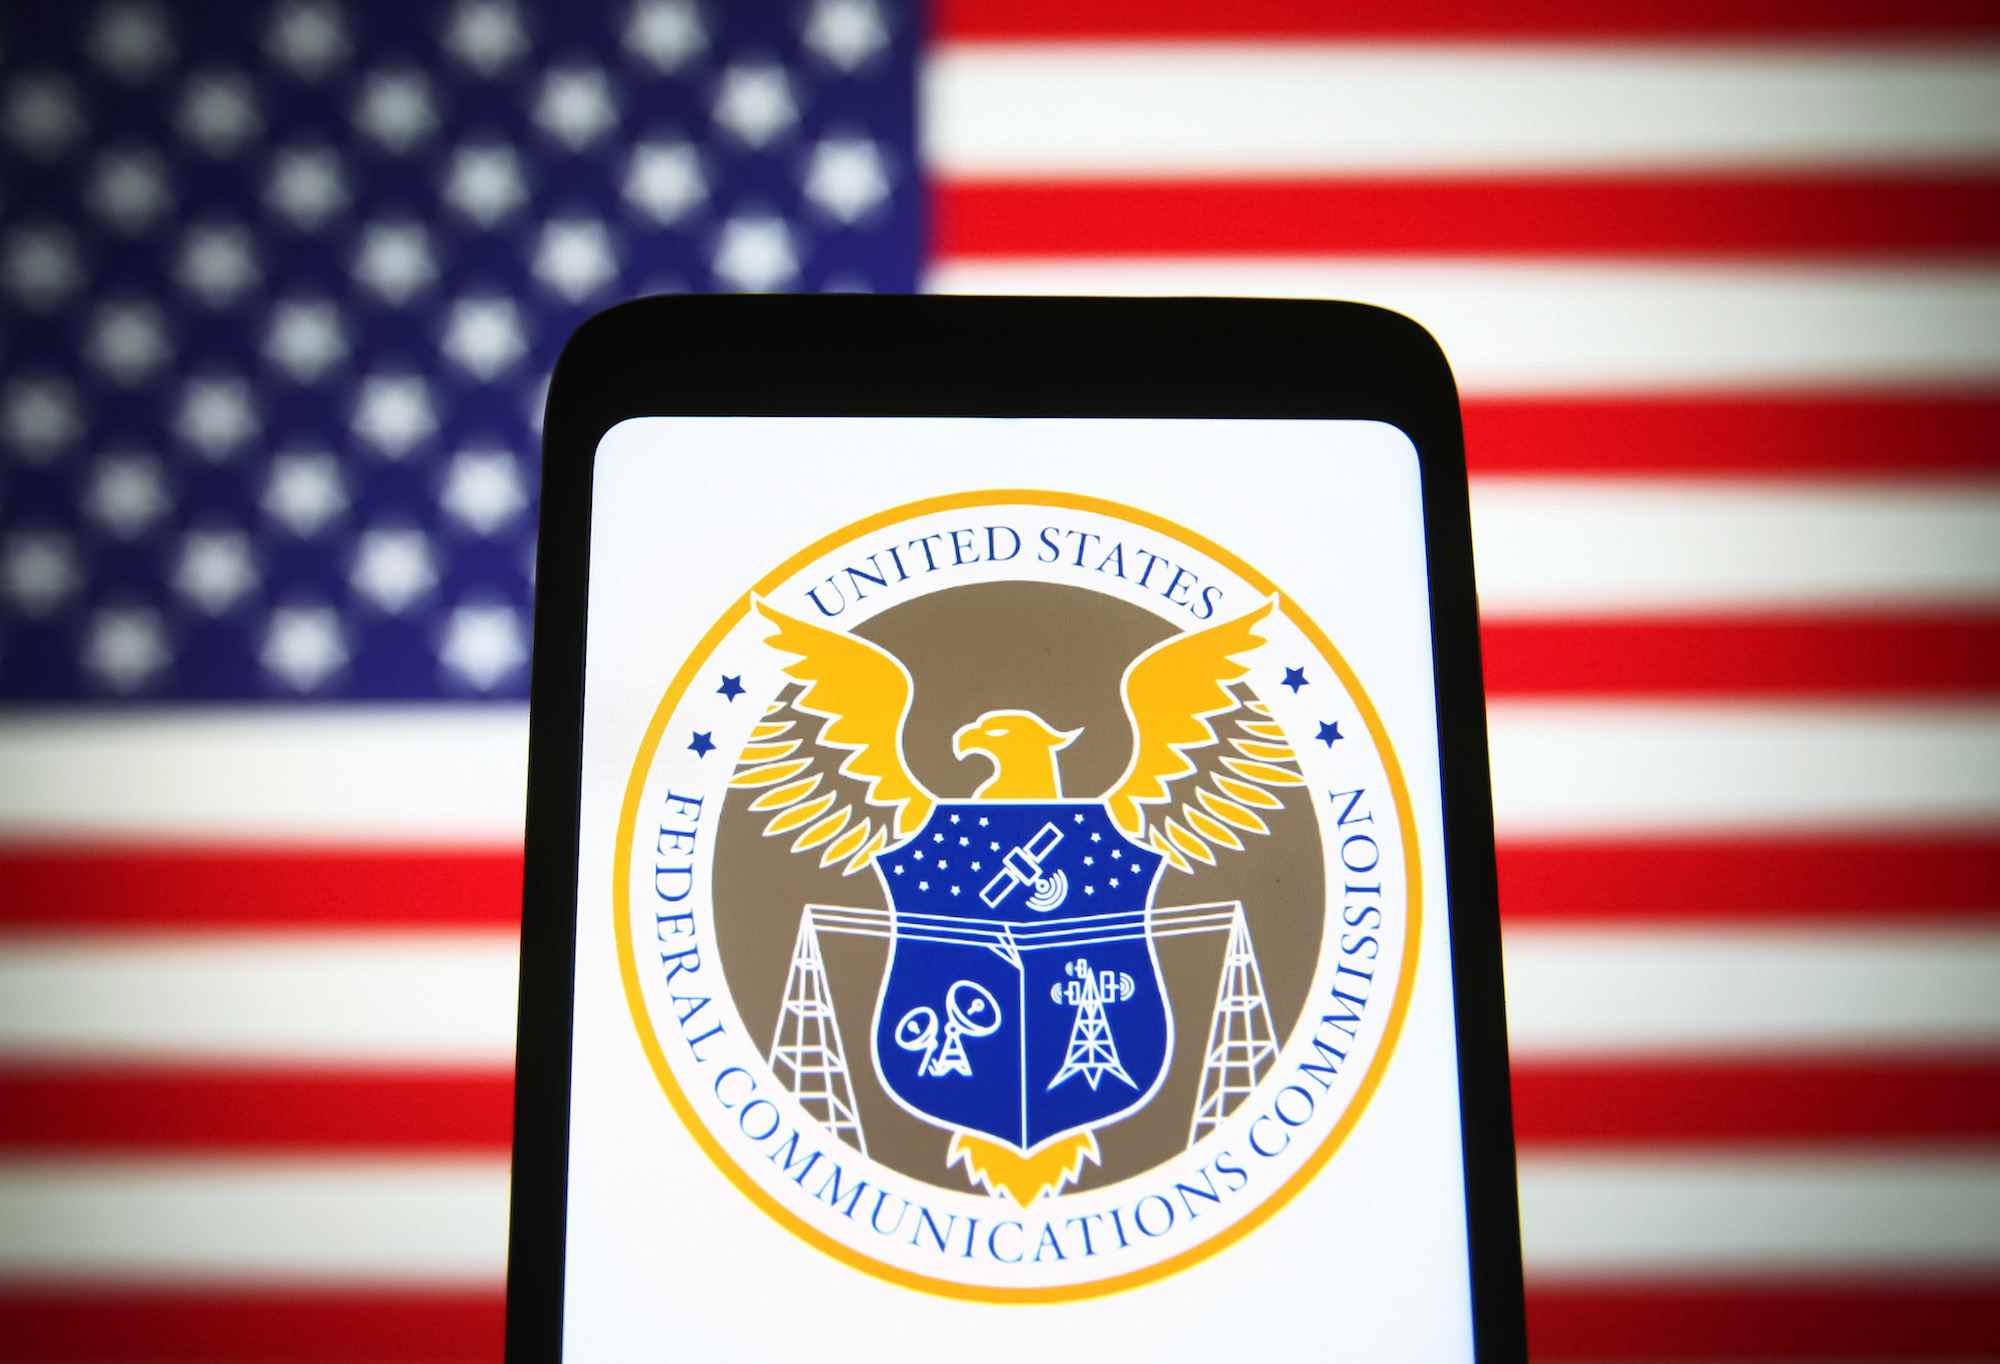 Le sceau de la Federal Communications Commission (FCC) des États-Unis est visible sur l'écran d'un smartphone avec le drapeau américain en arrière-plan.